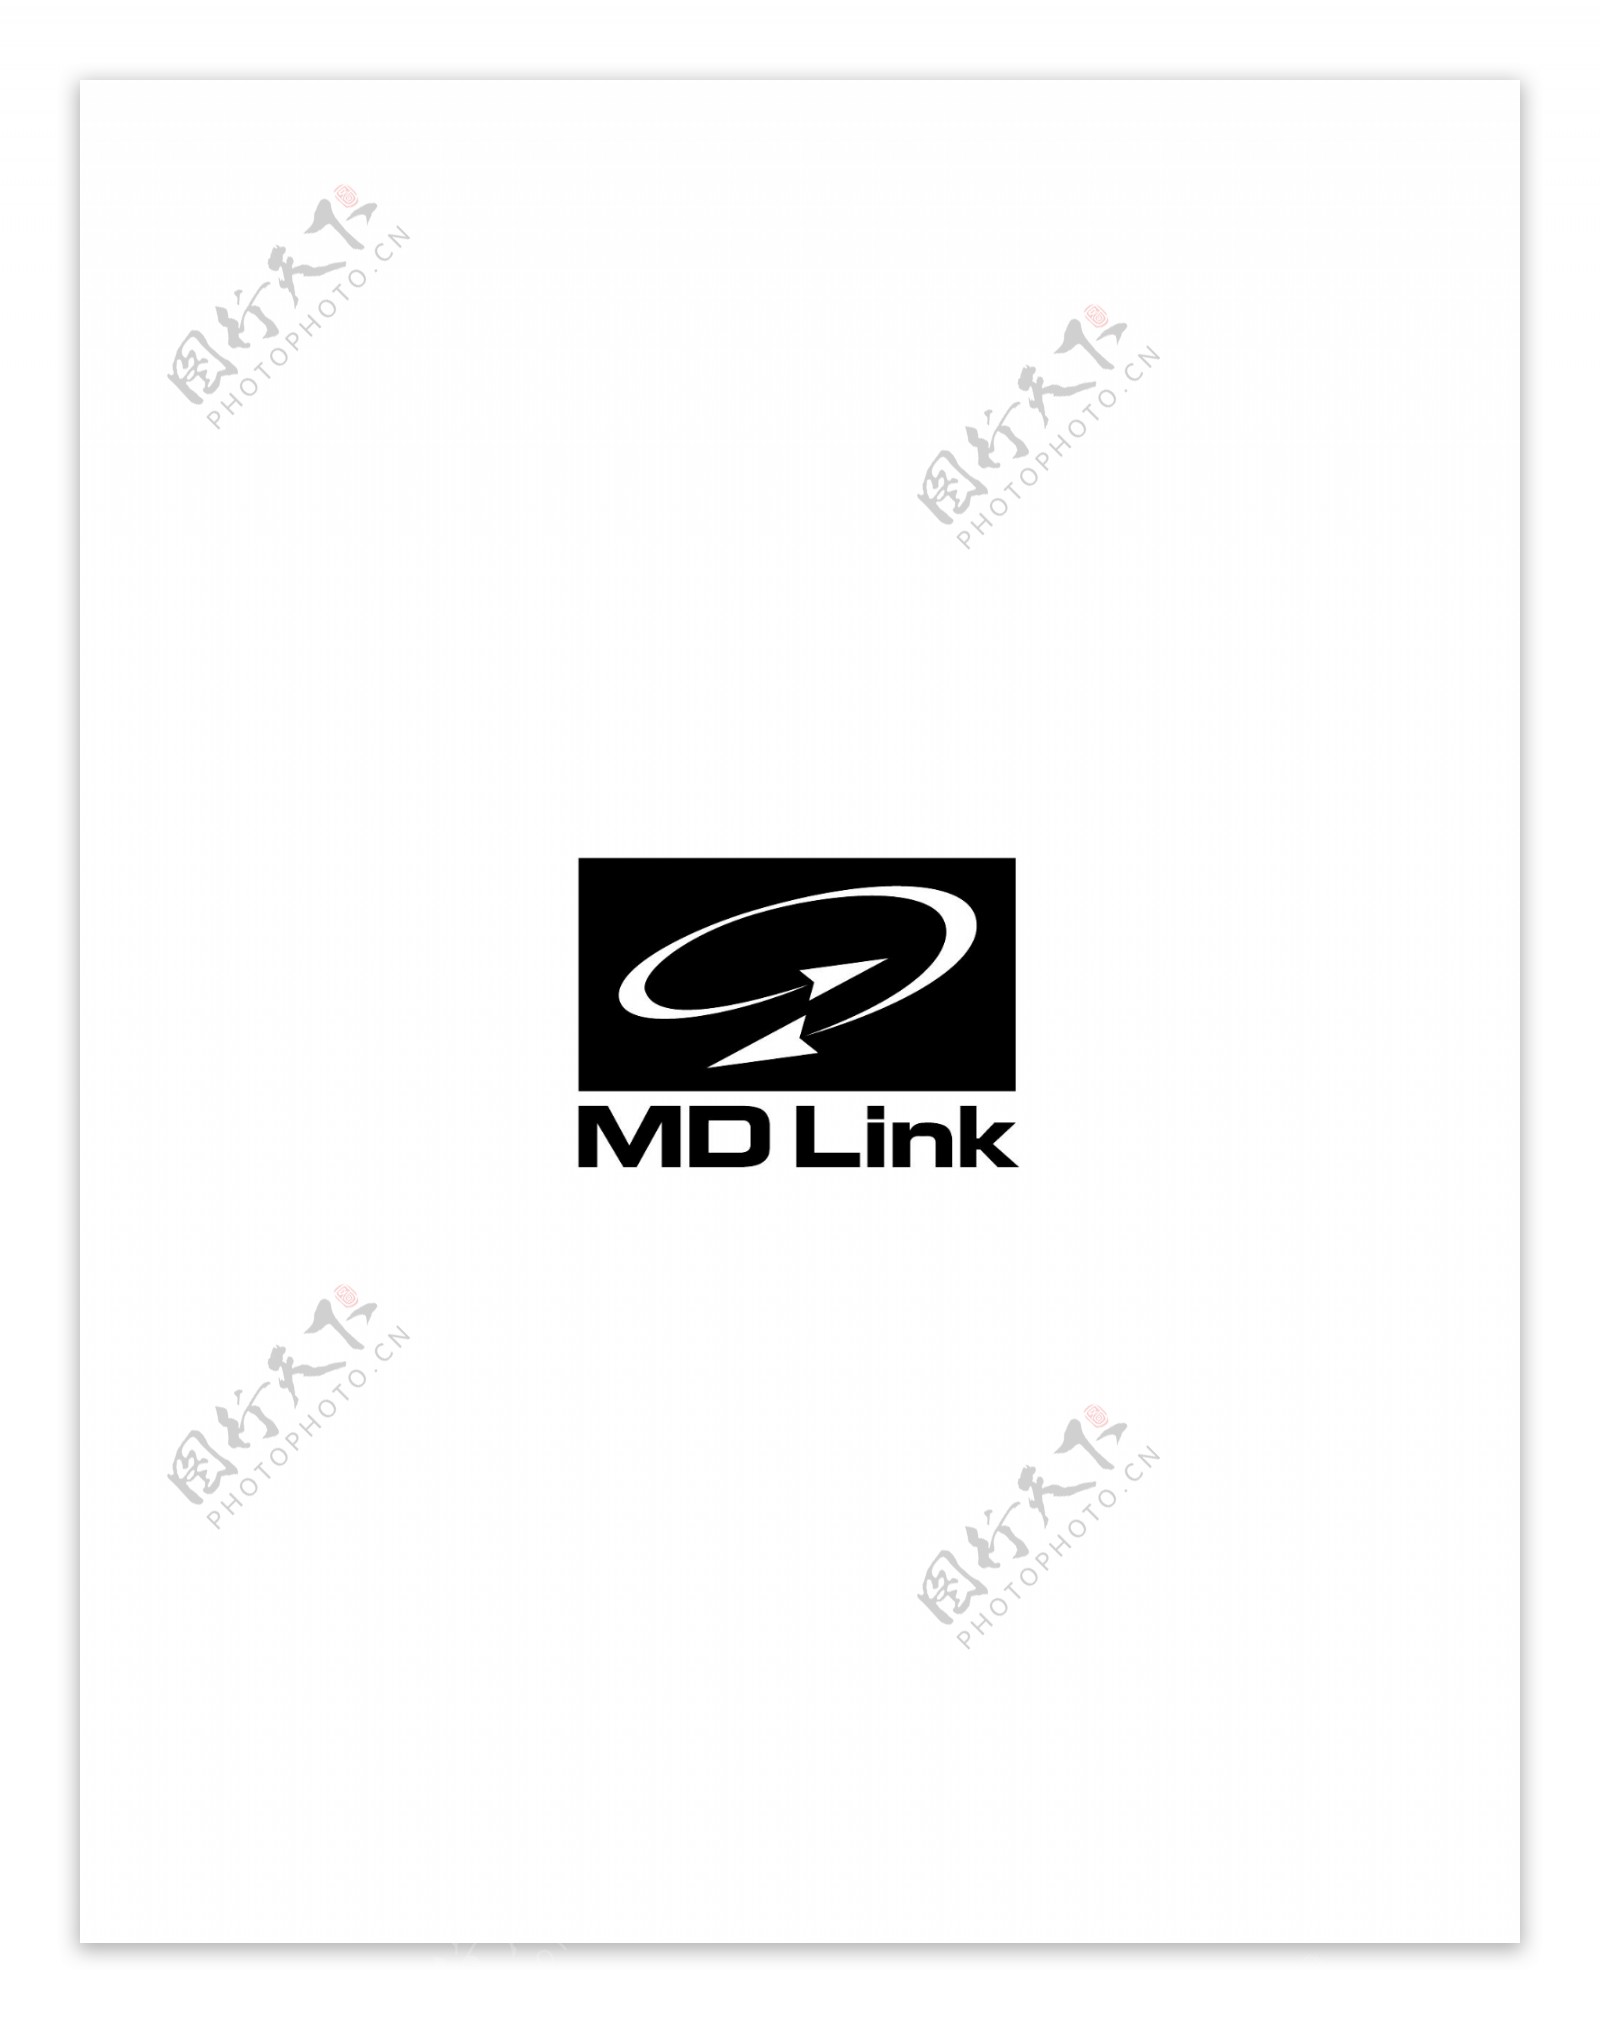 MDLinklogo设计欣赏传统企业标志设计MDLink下载标志设计欣赏